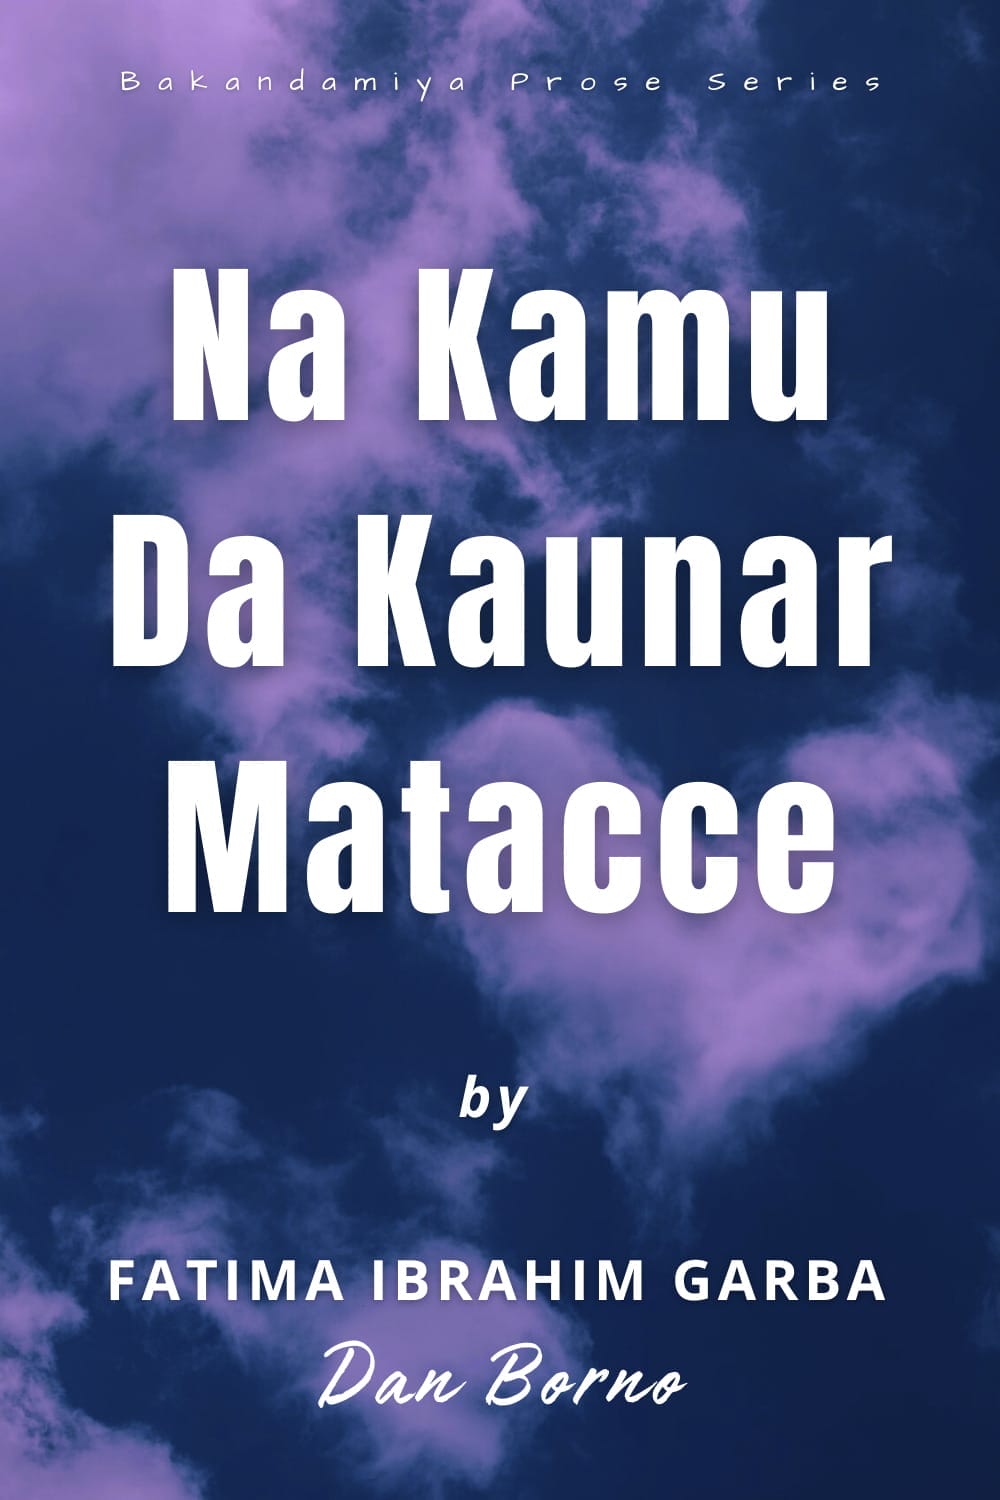 Na Kamu Da Kaunar Matacce by Fatima Ibrahim Dan Borno Pinterest Pin